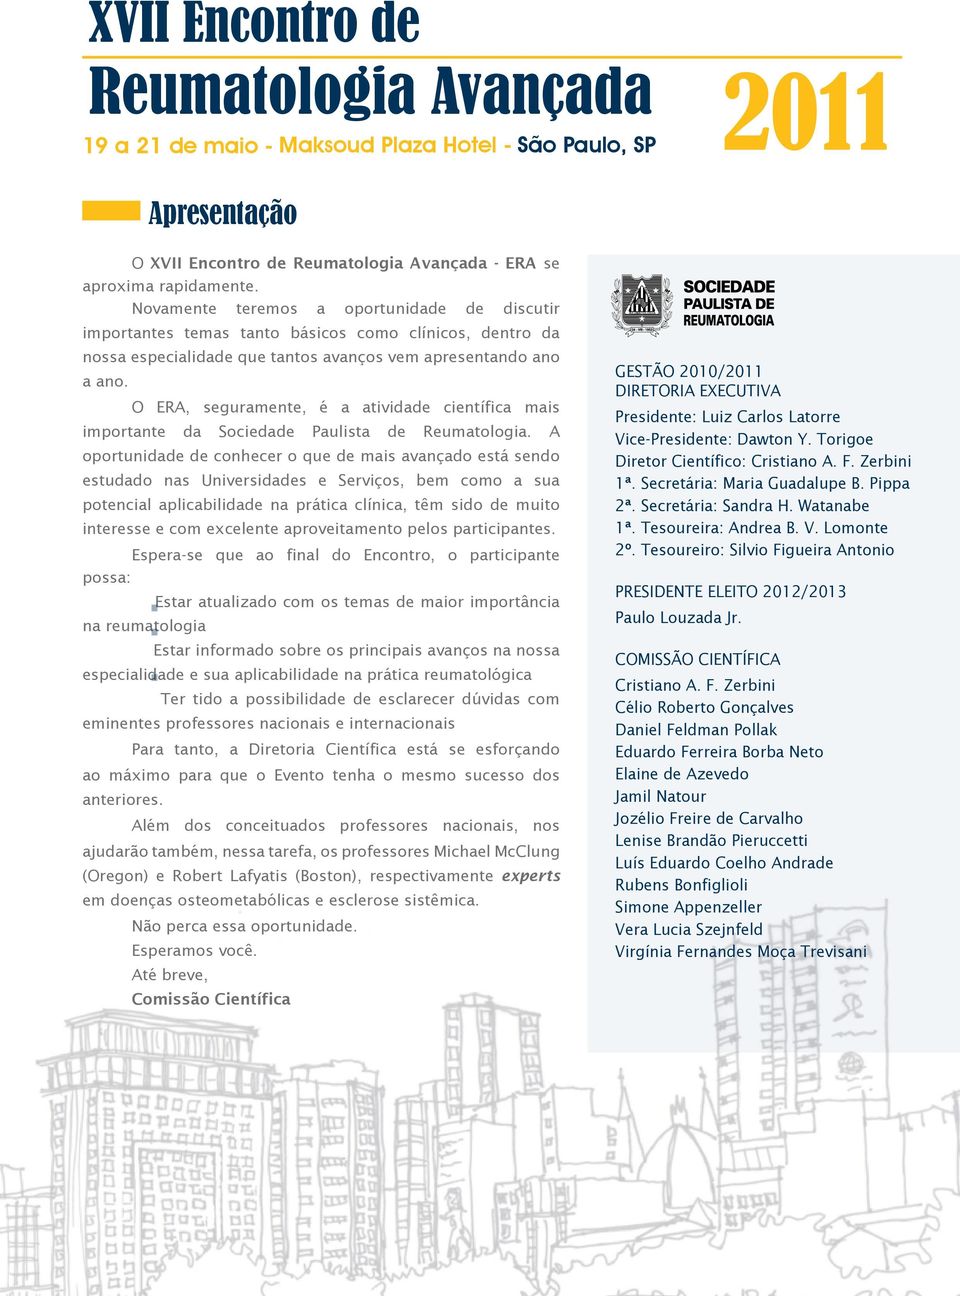 O ERA, seguramente, é a atividade científica mais importante da Sociedade Paulista de Reumatologia.